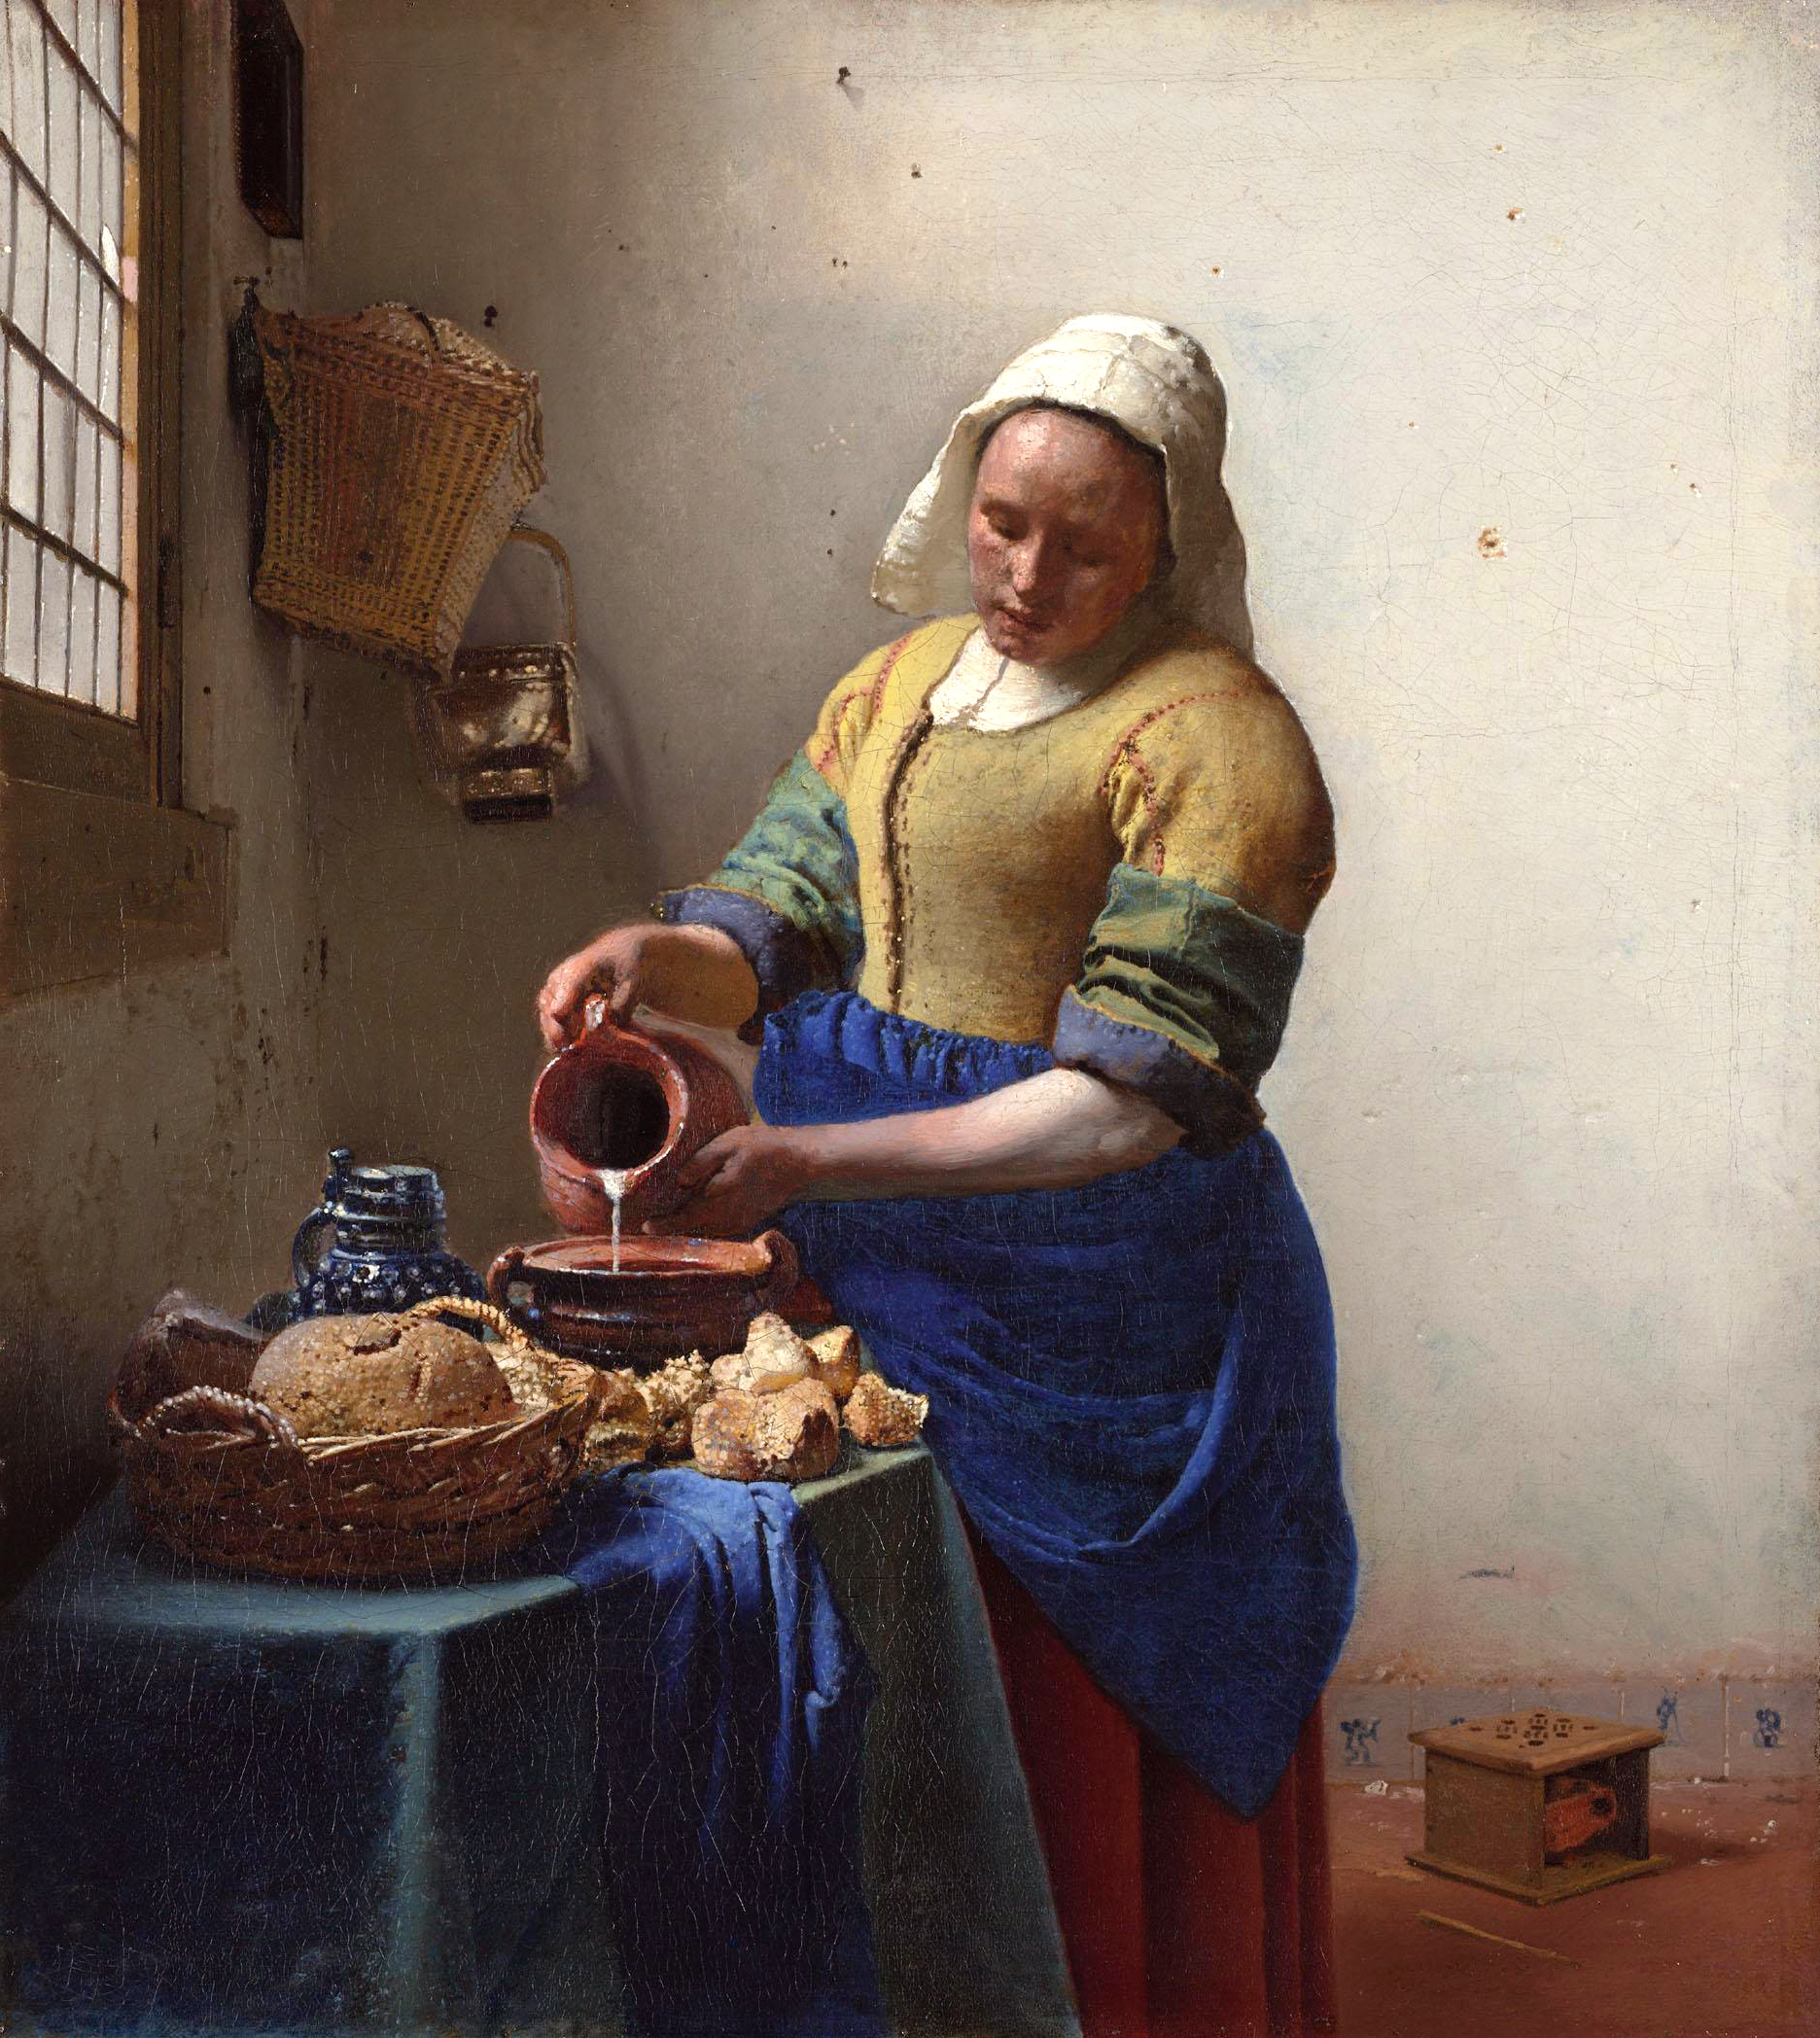 Holenderskie malarstwo przedstawia często prawdziwą idyllę. Ale czy rzeczywiście życie niższych klas było tak beztroskie, jak wynikałoby z obrazów Vermeera i innych mistrzów pędzla?